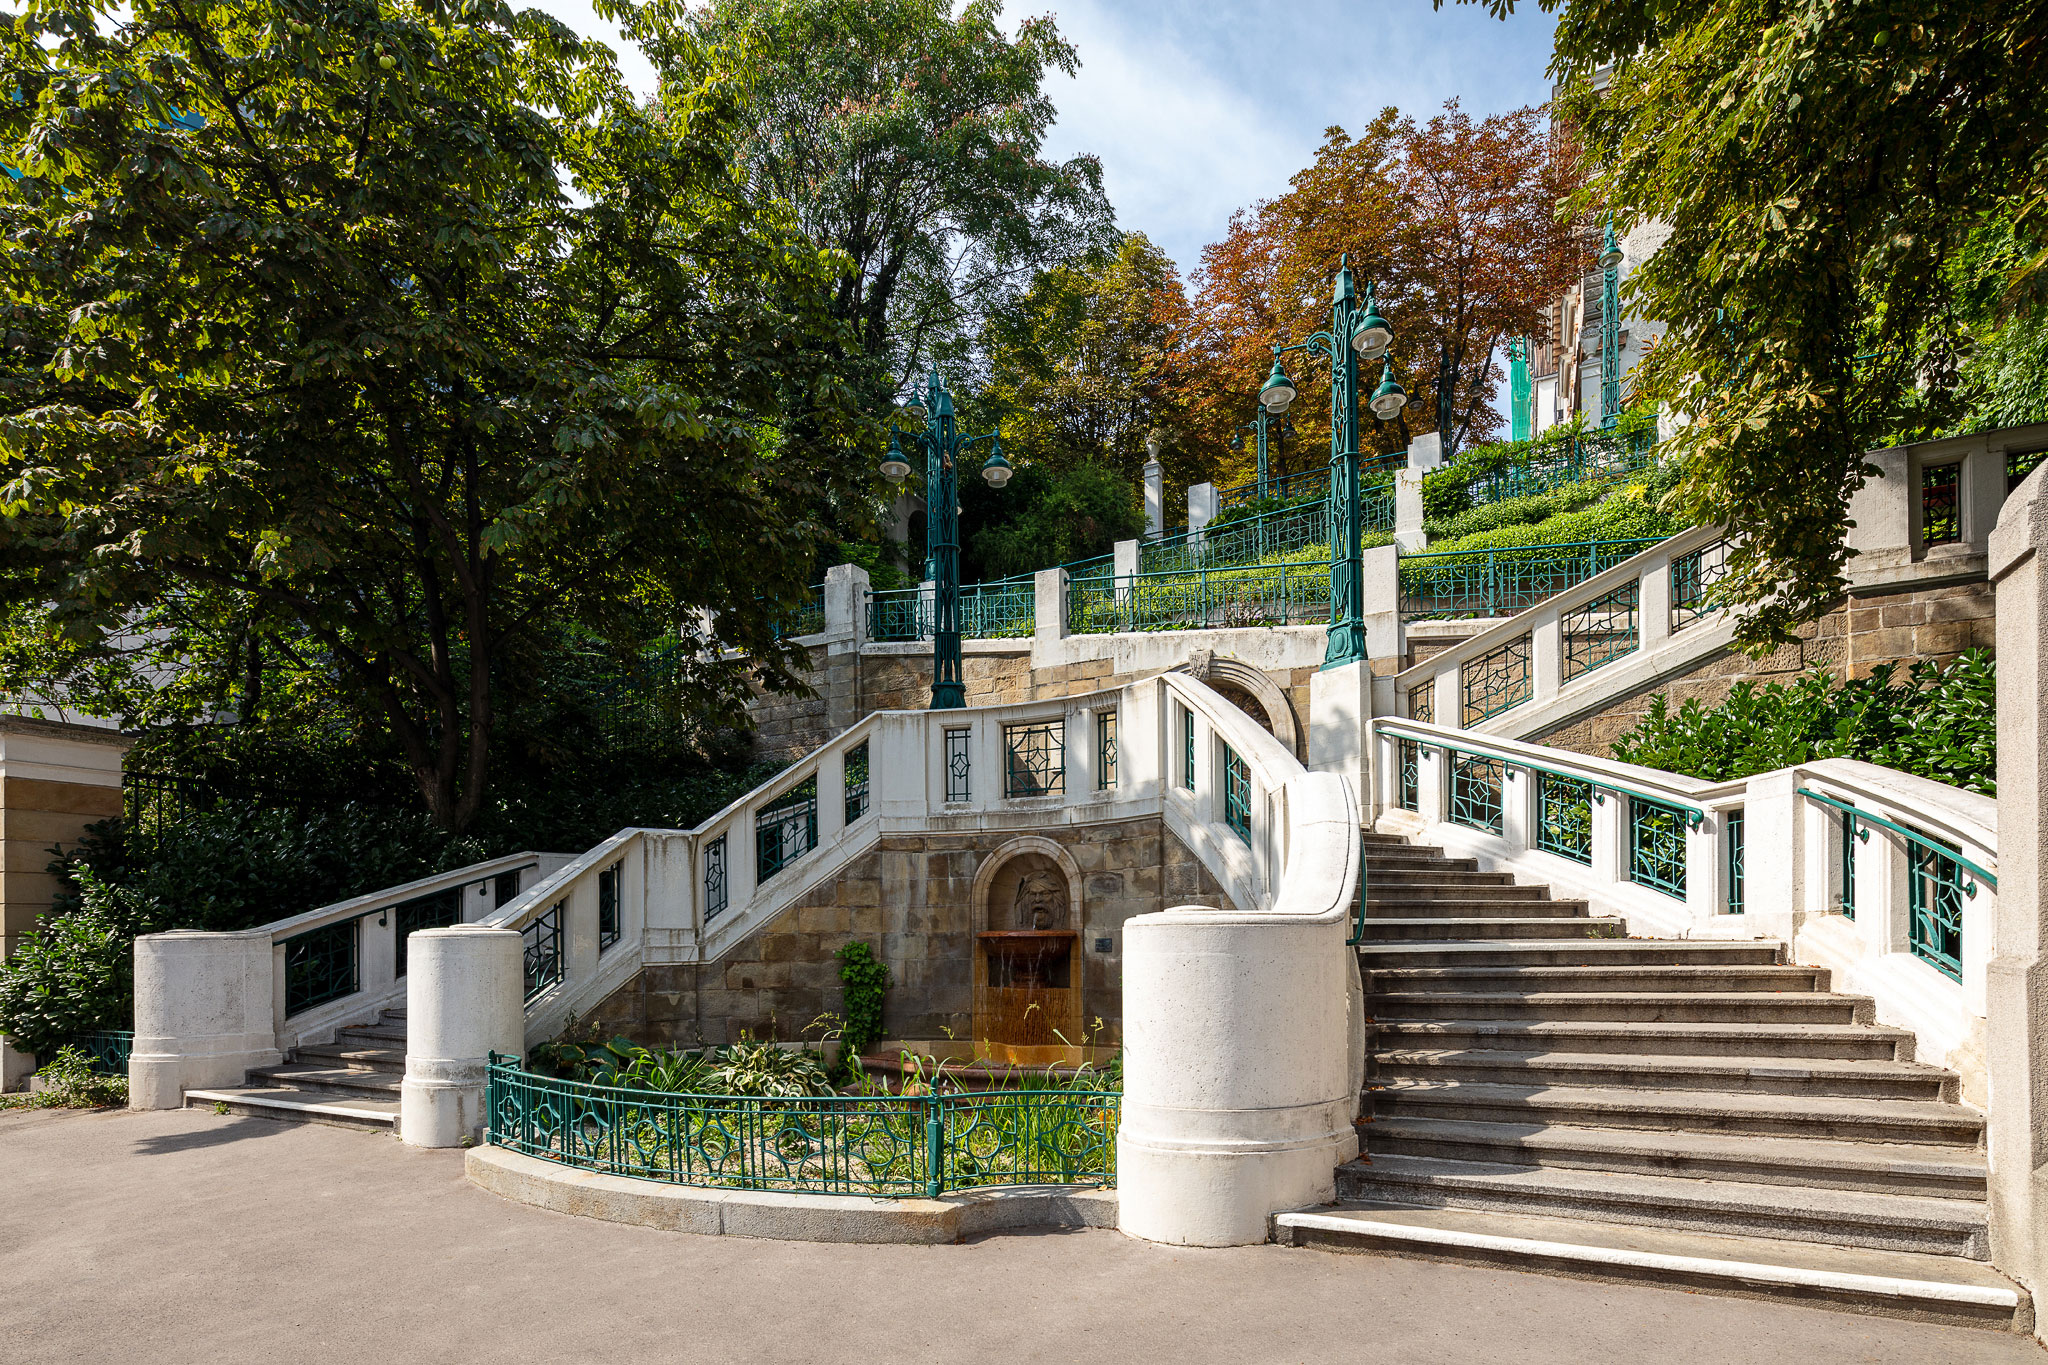 Vision Estate und Pegasus erwerben historisches Palais in Wien